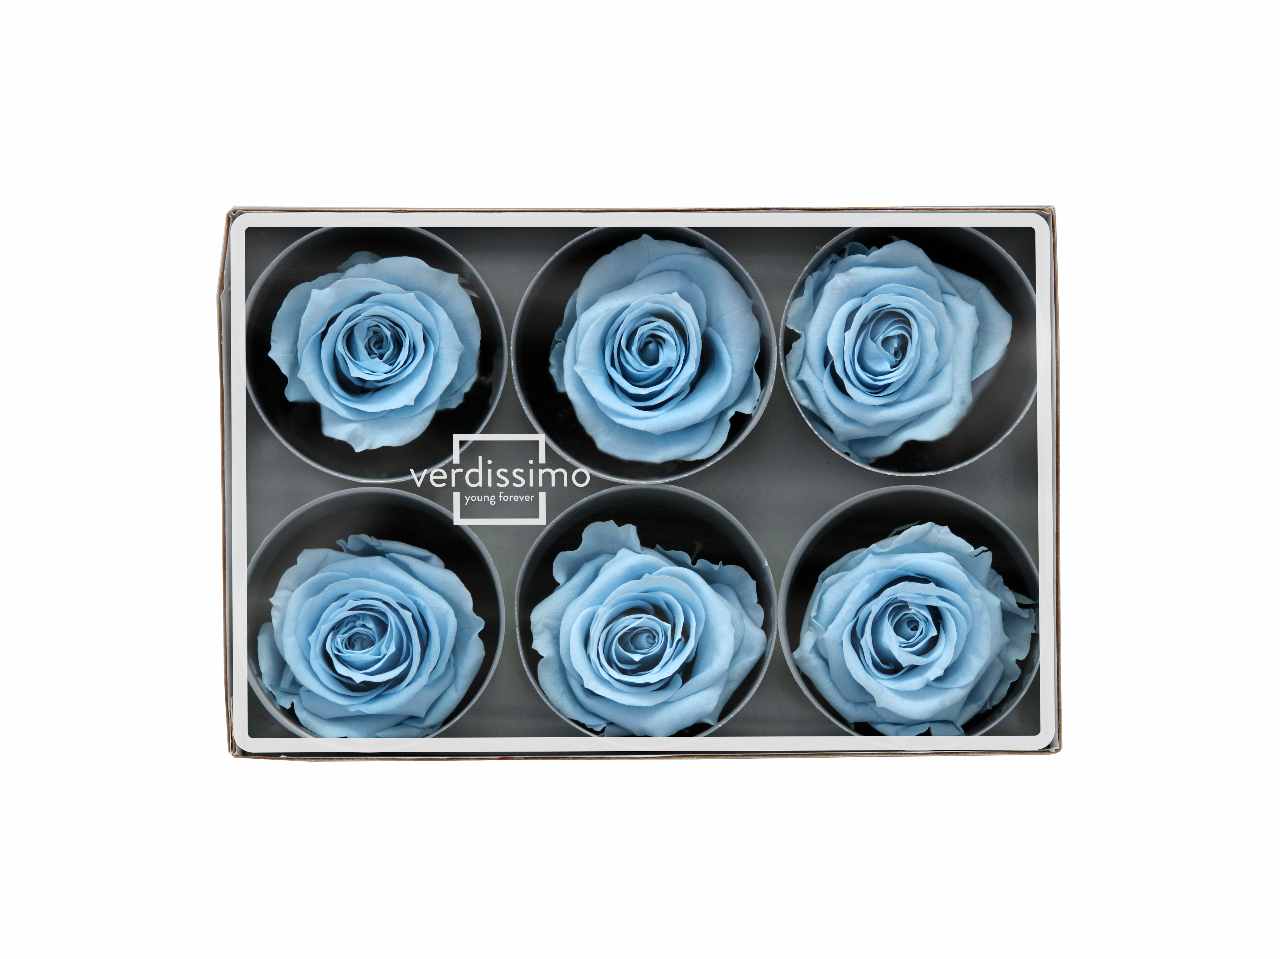 Rosa stabilizzata colore blu misura d.5,5cm - La confezione comprende 6 rose